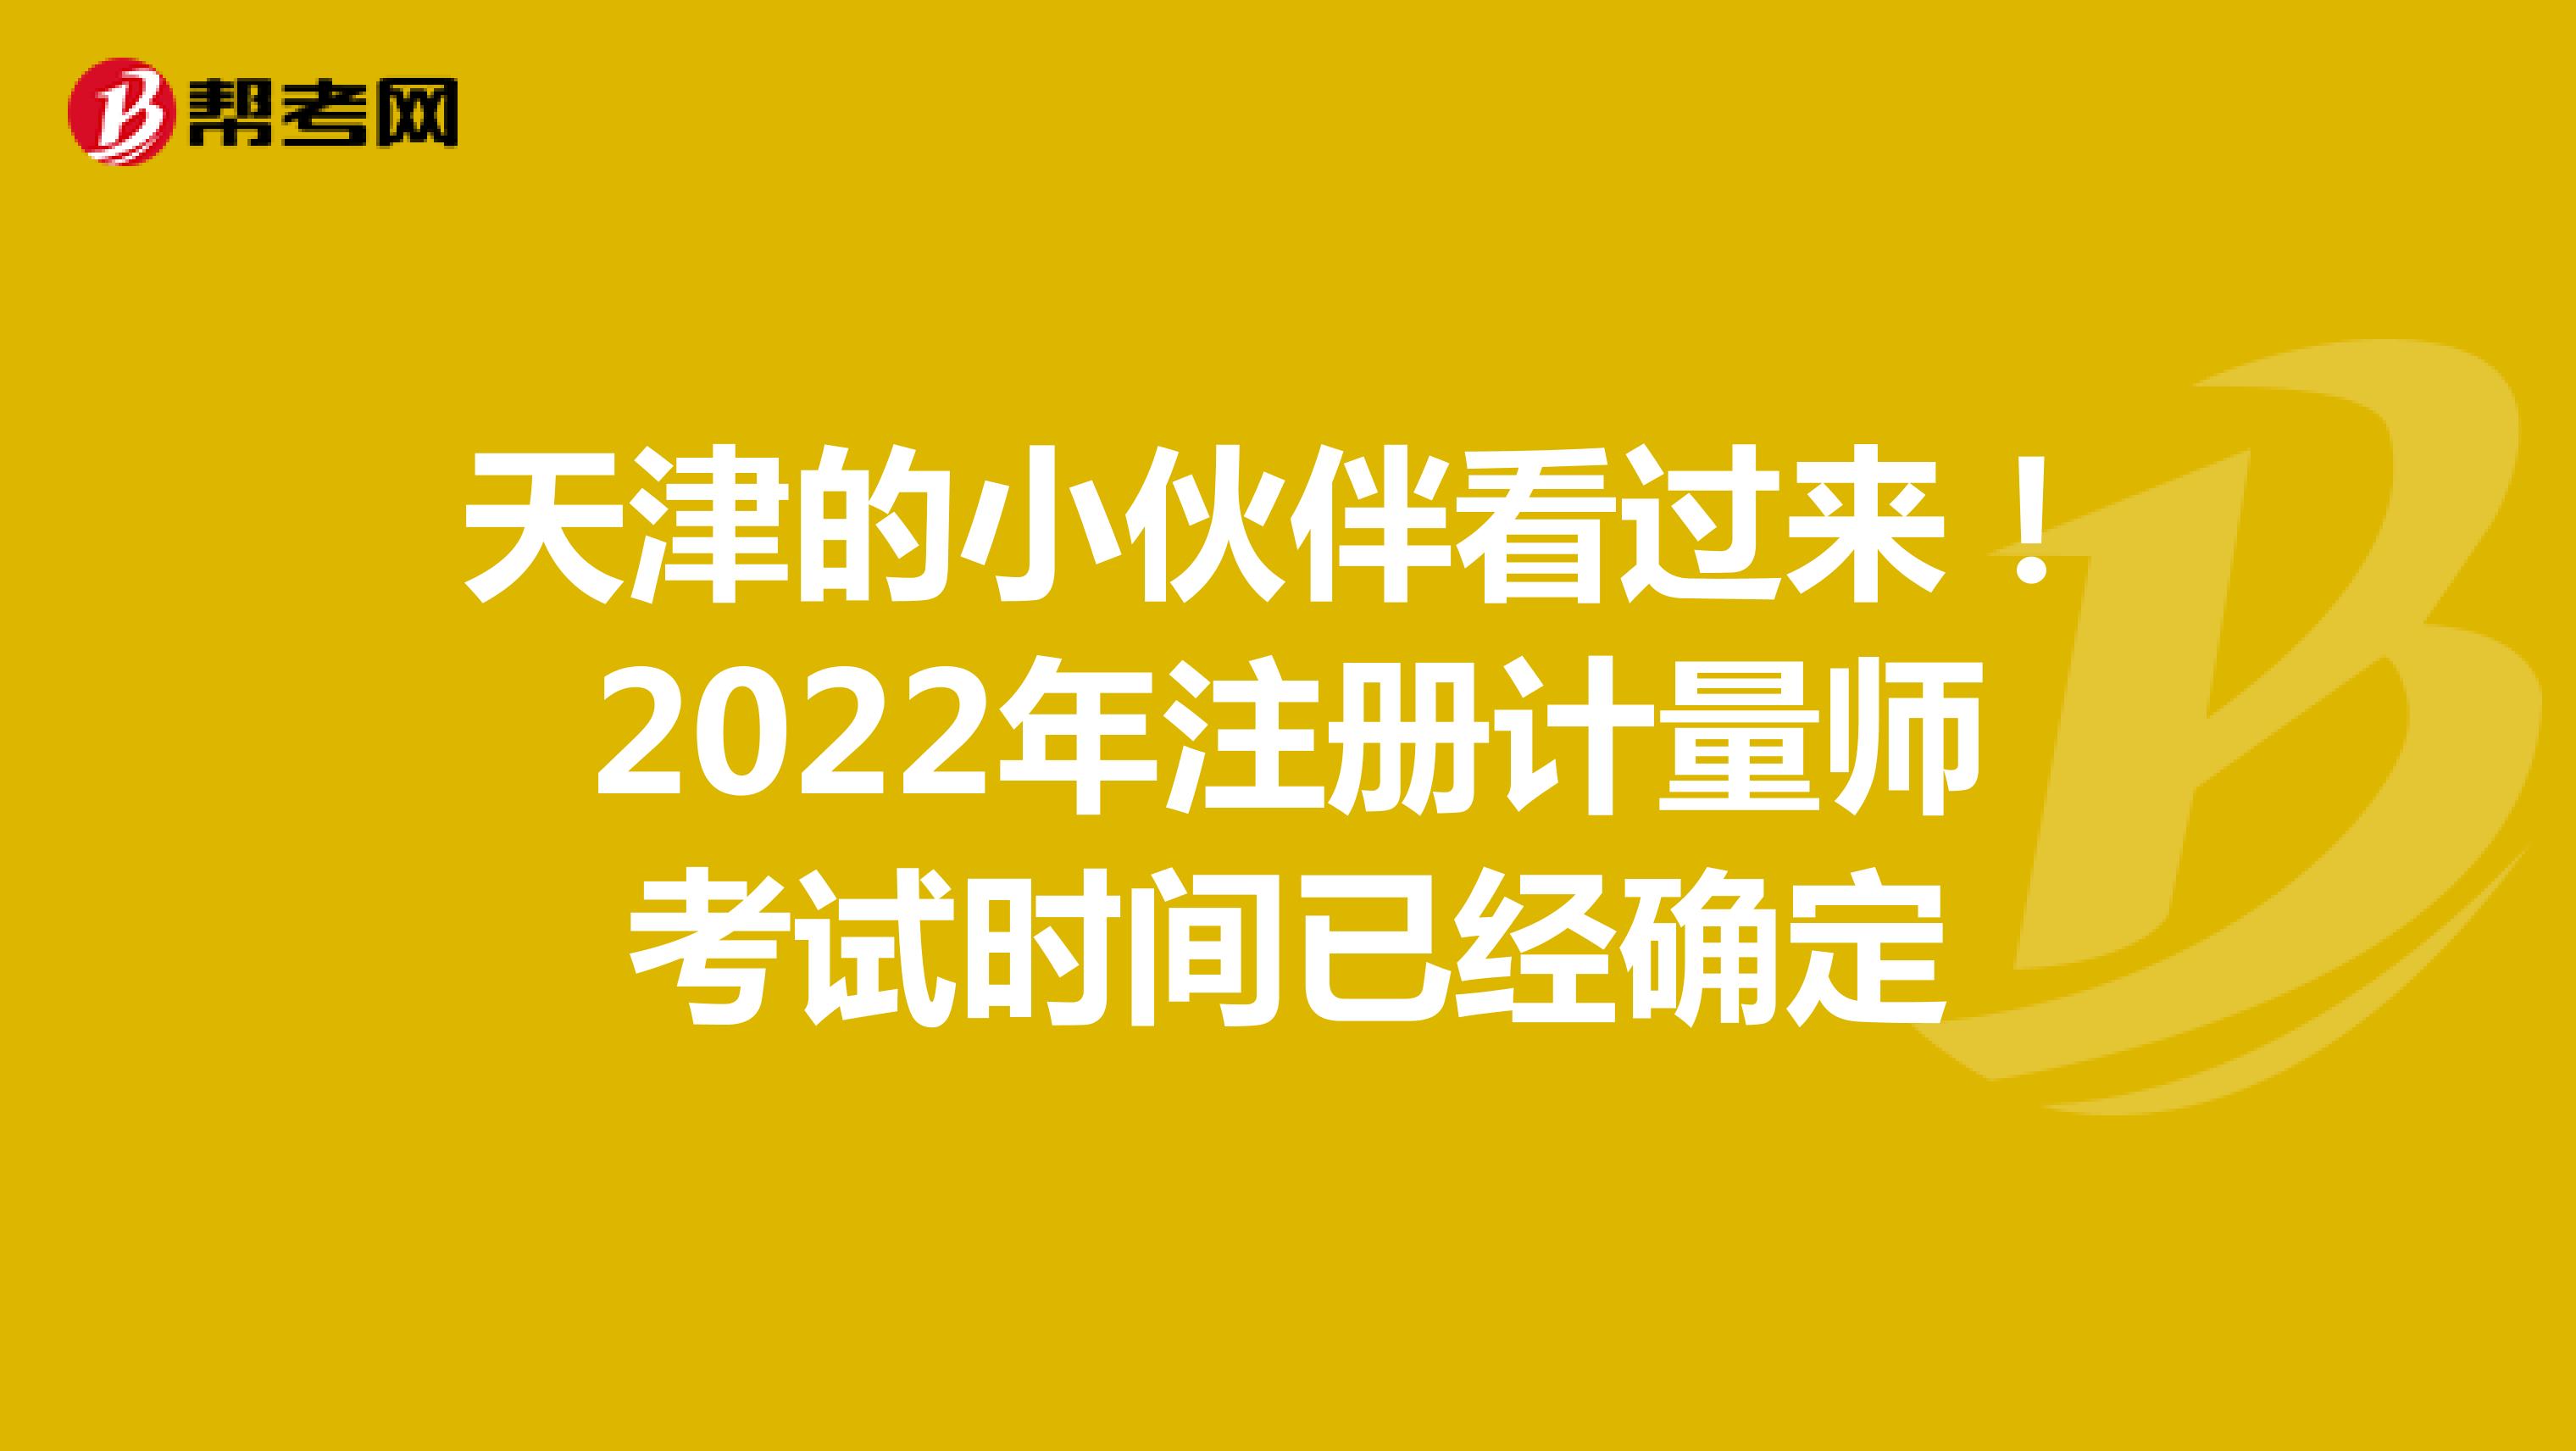 天津的小伙伴2022年注册计量师考试时间已经公布